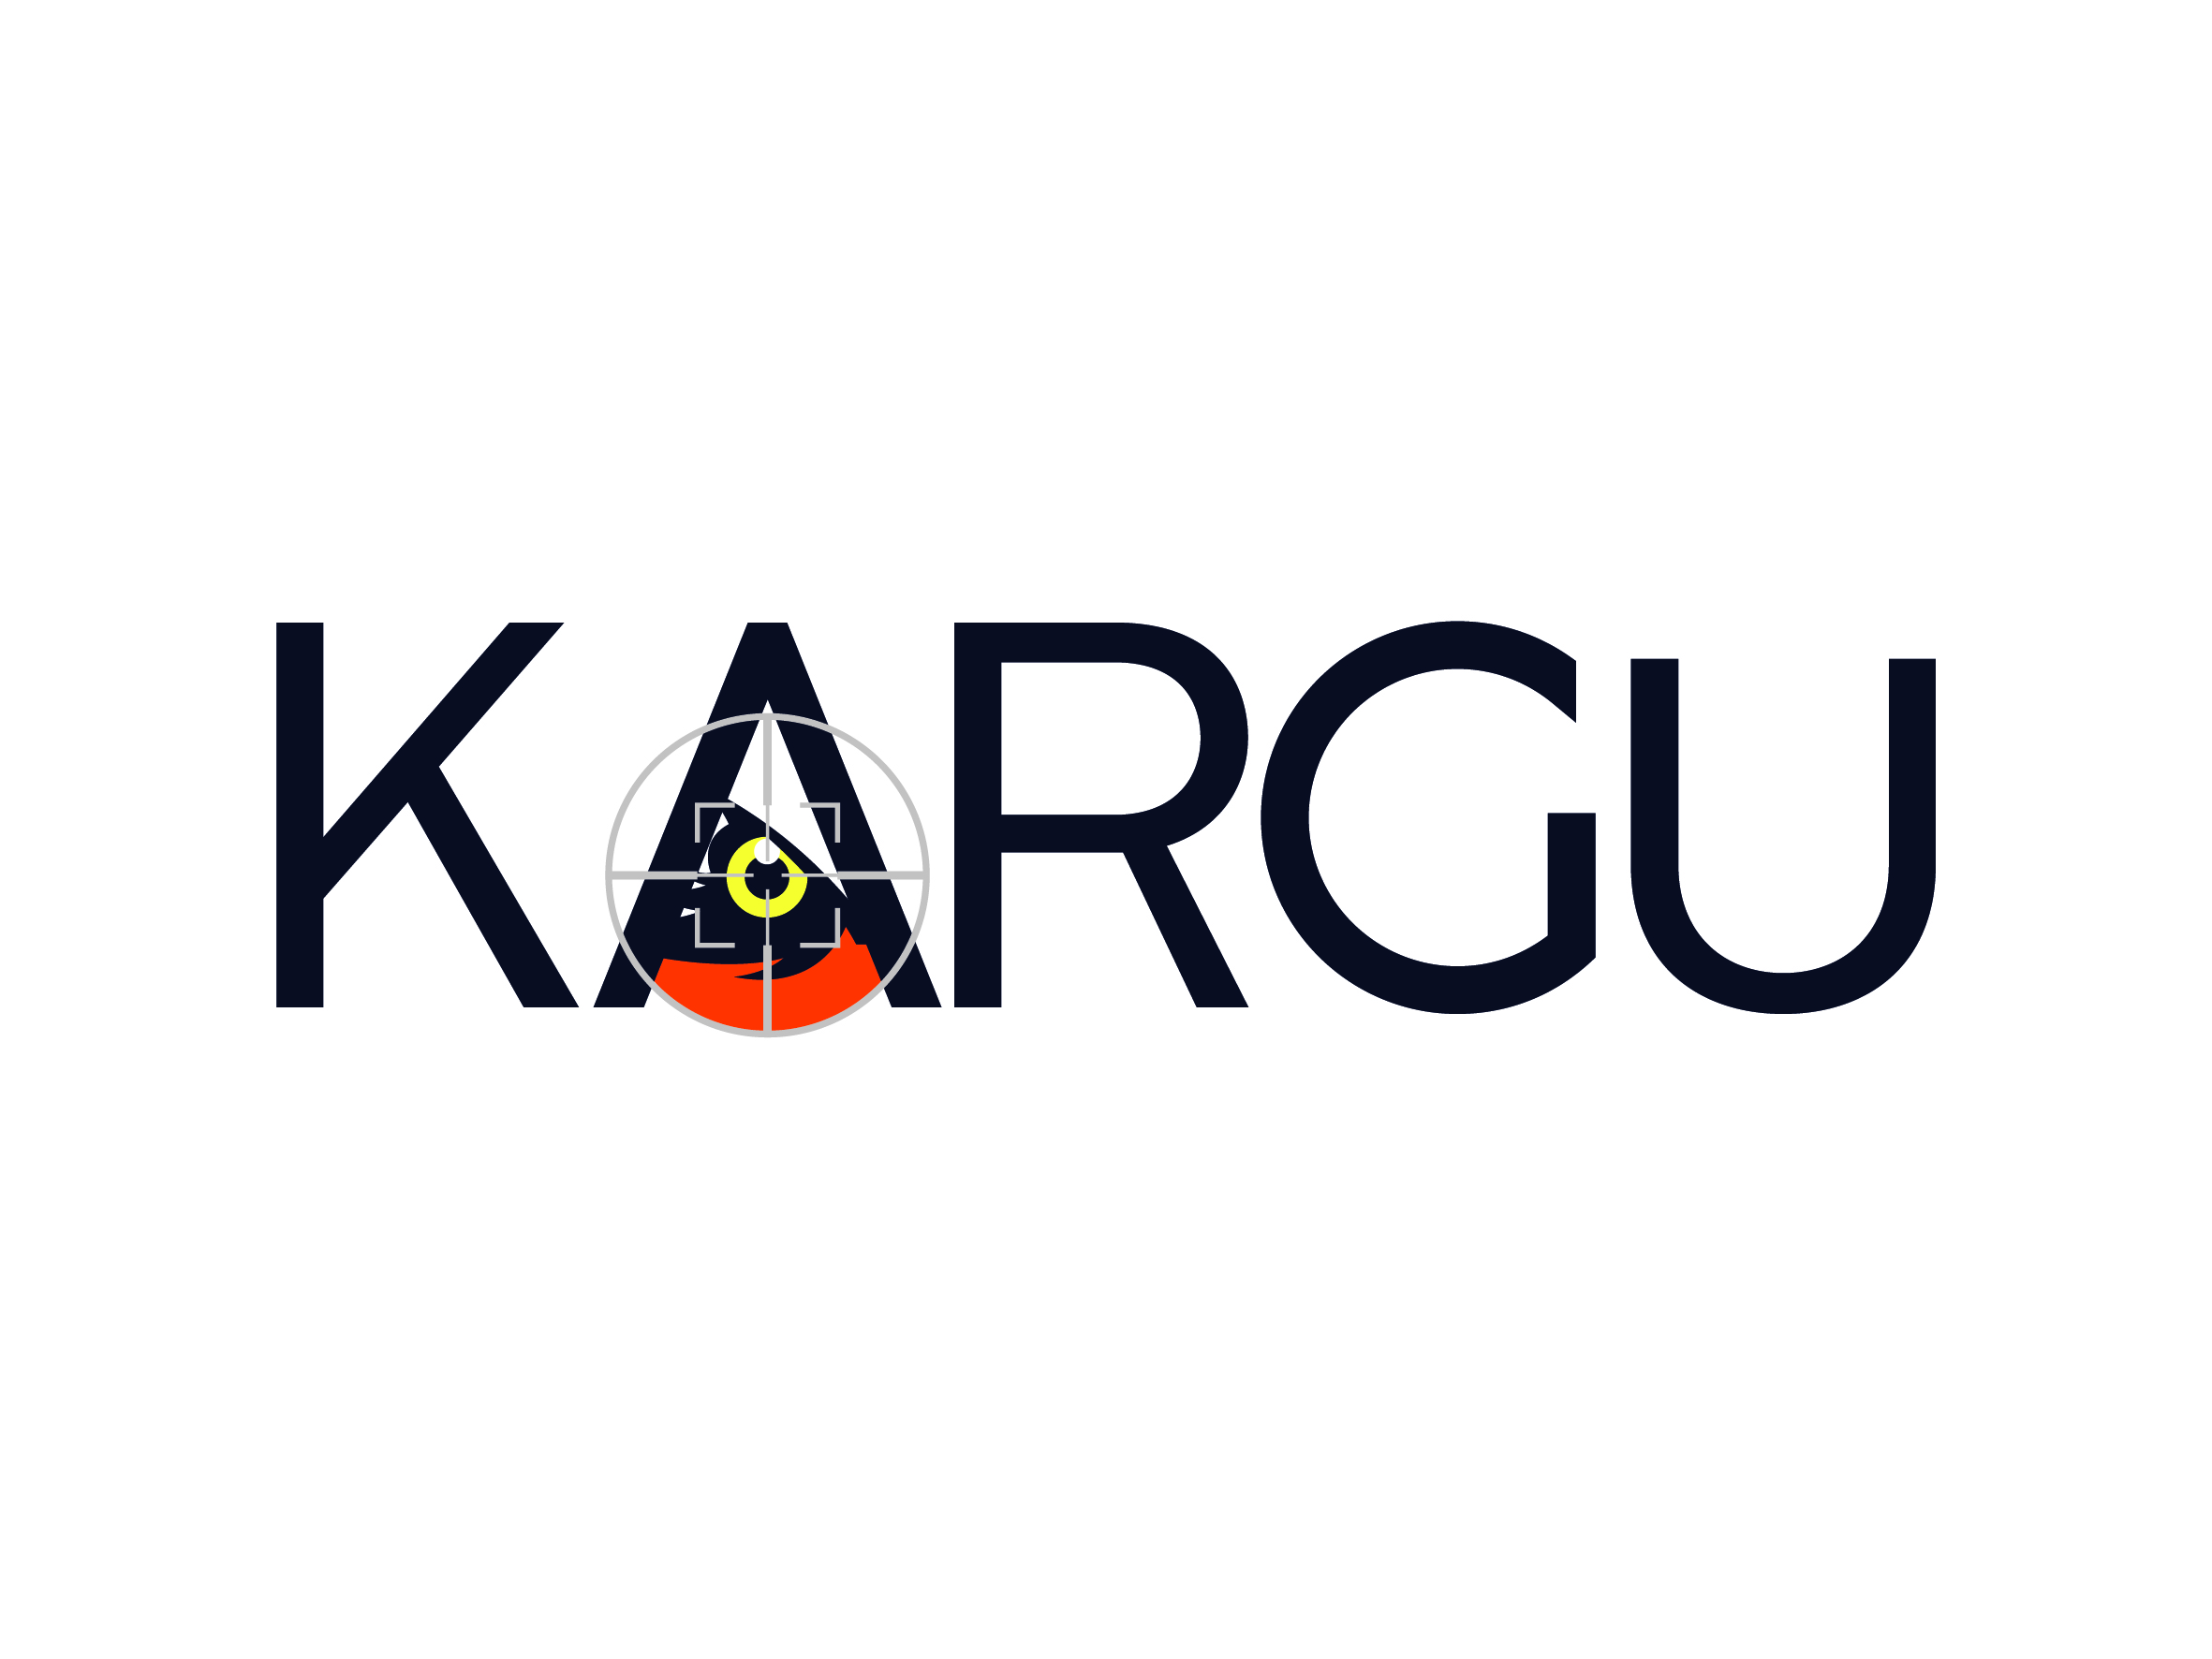 KARGU Logotype 01 020118 01